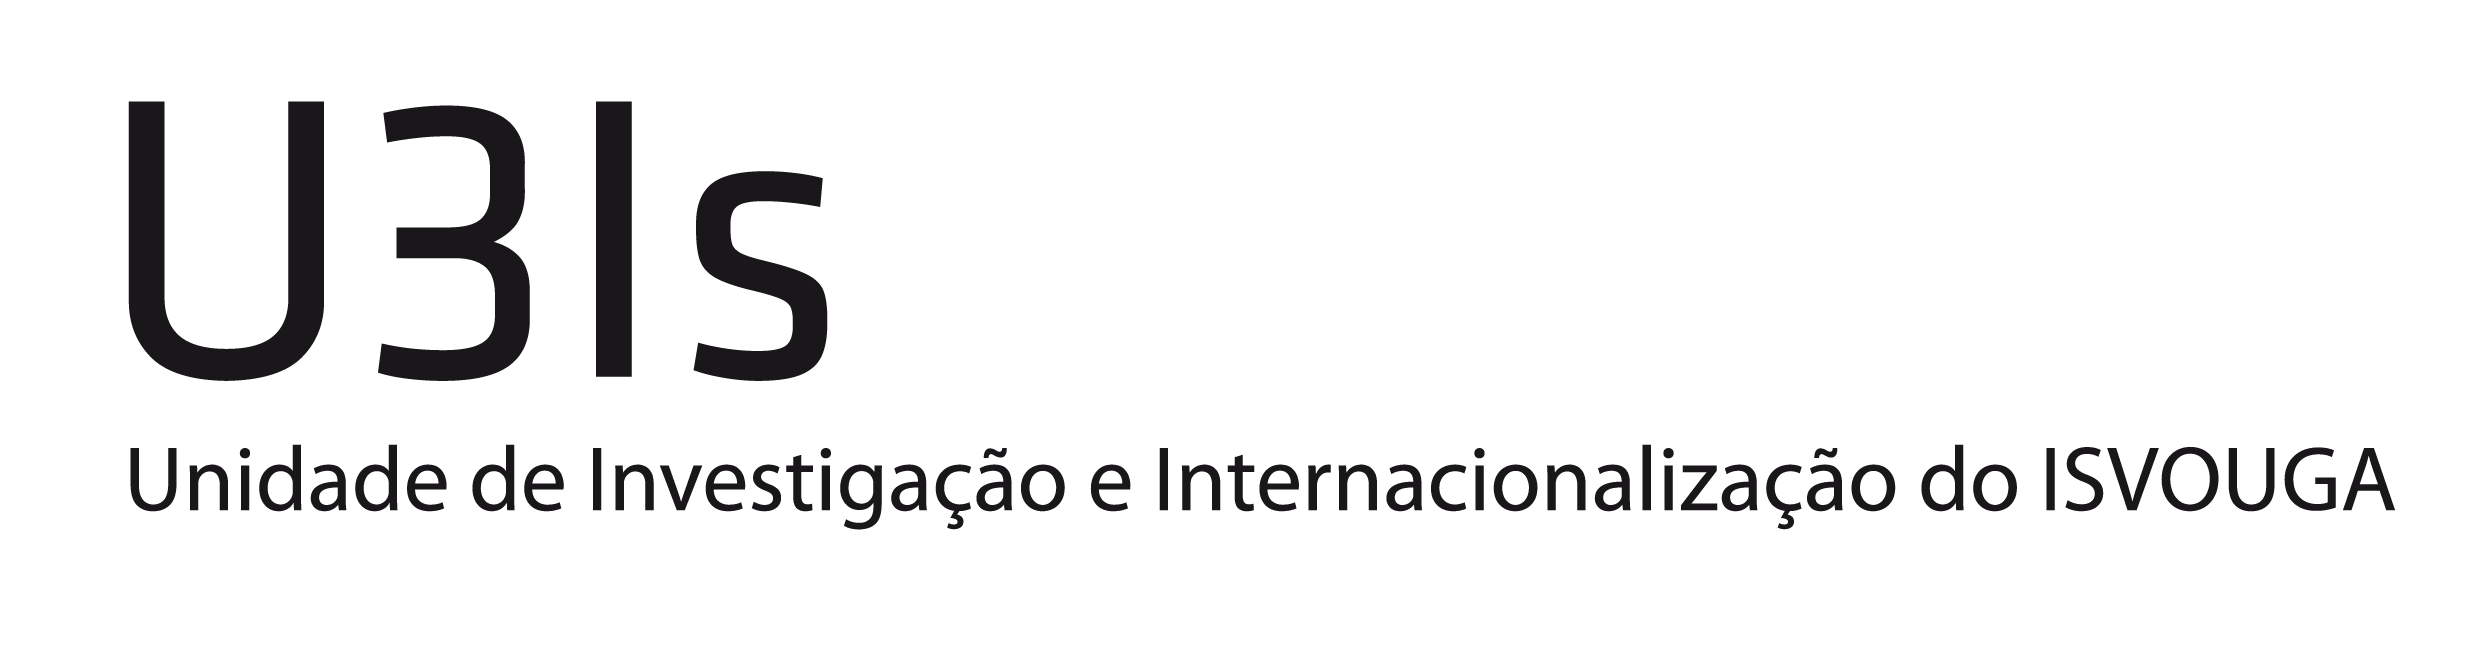 Unidade de Investigação e Internacionalização do ISVOUGA